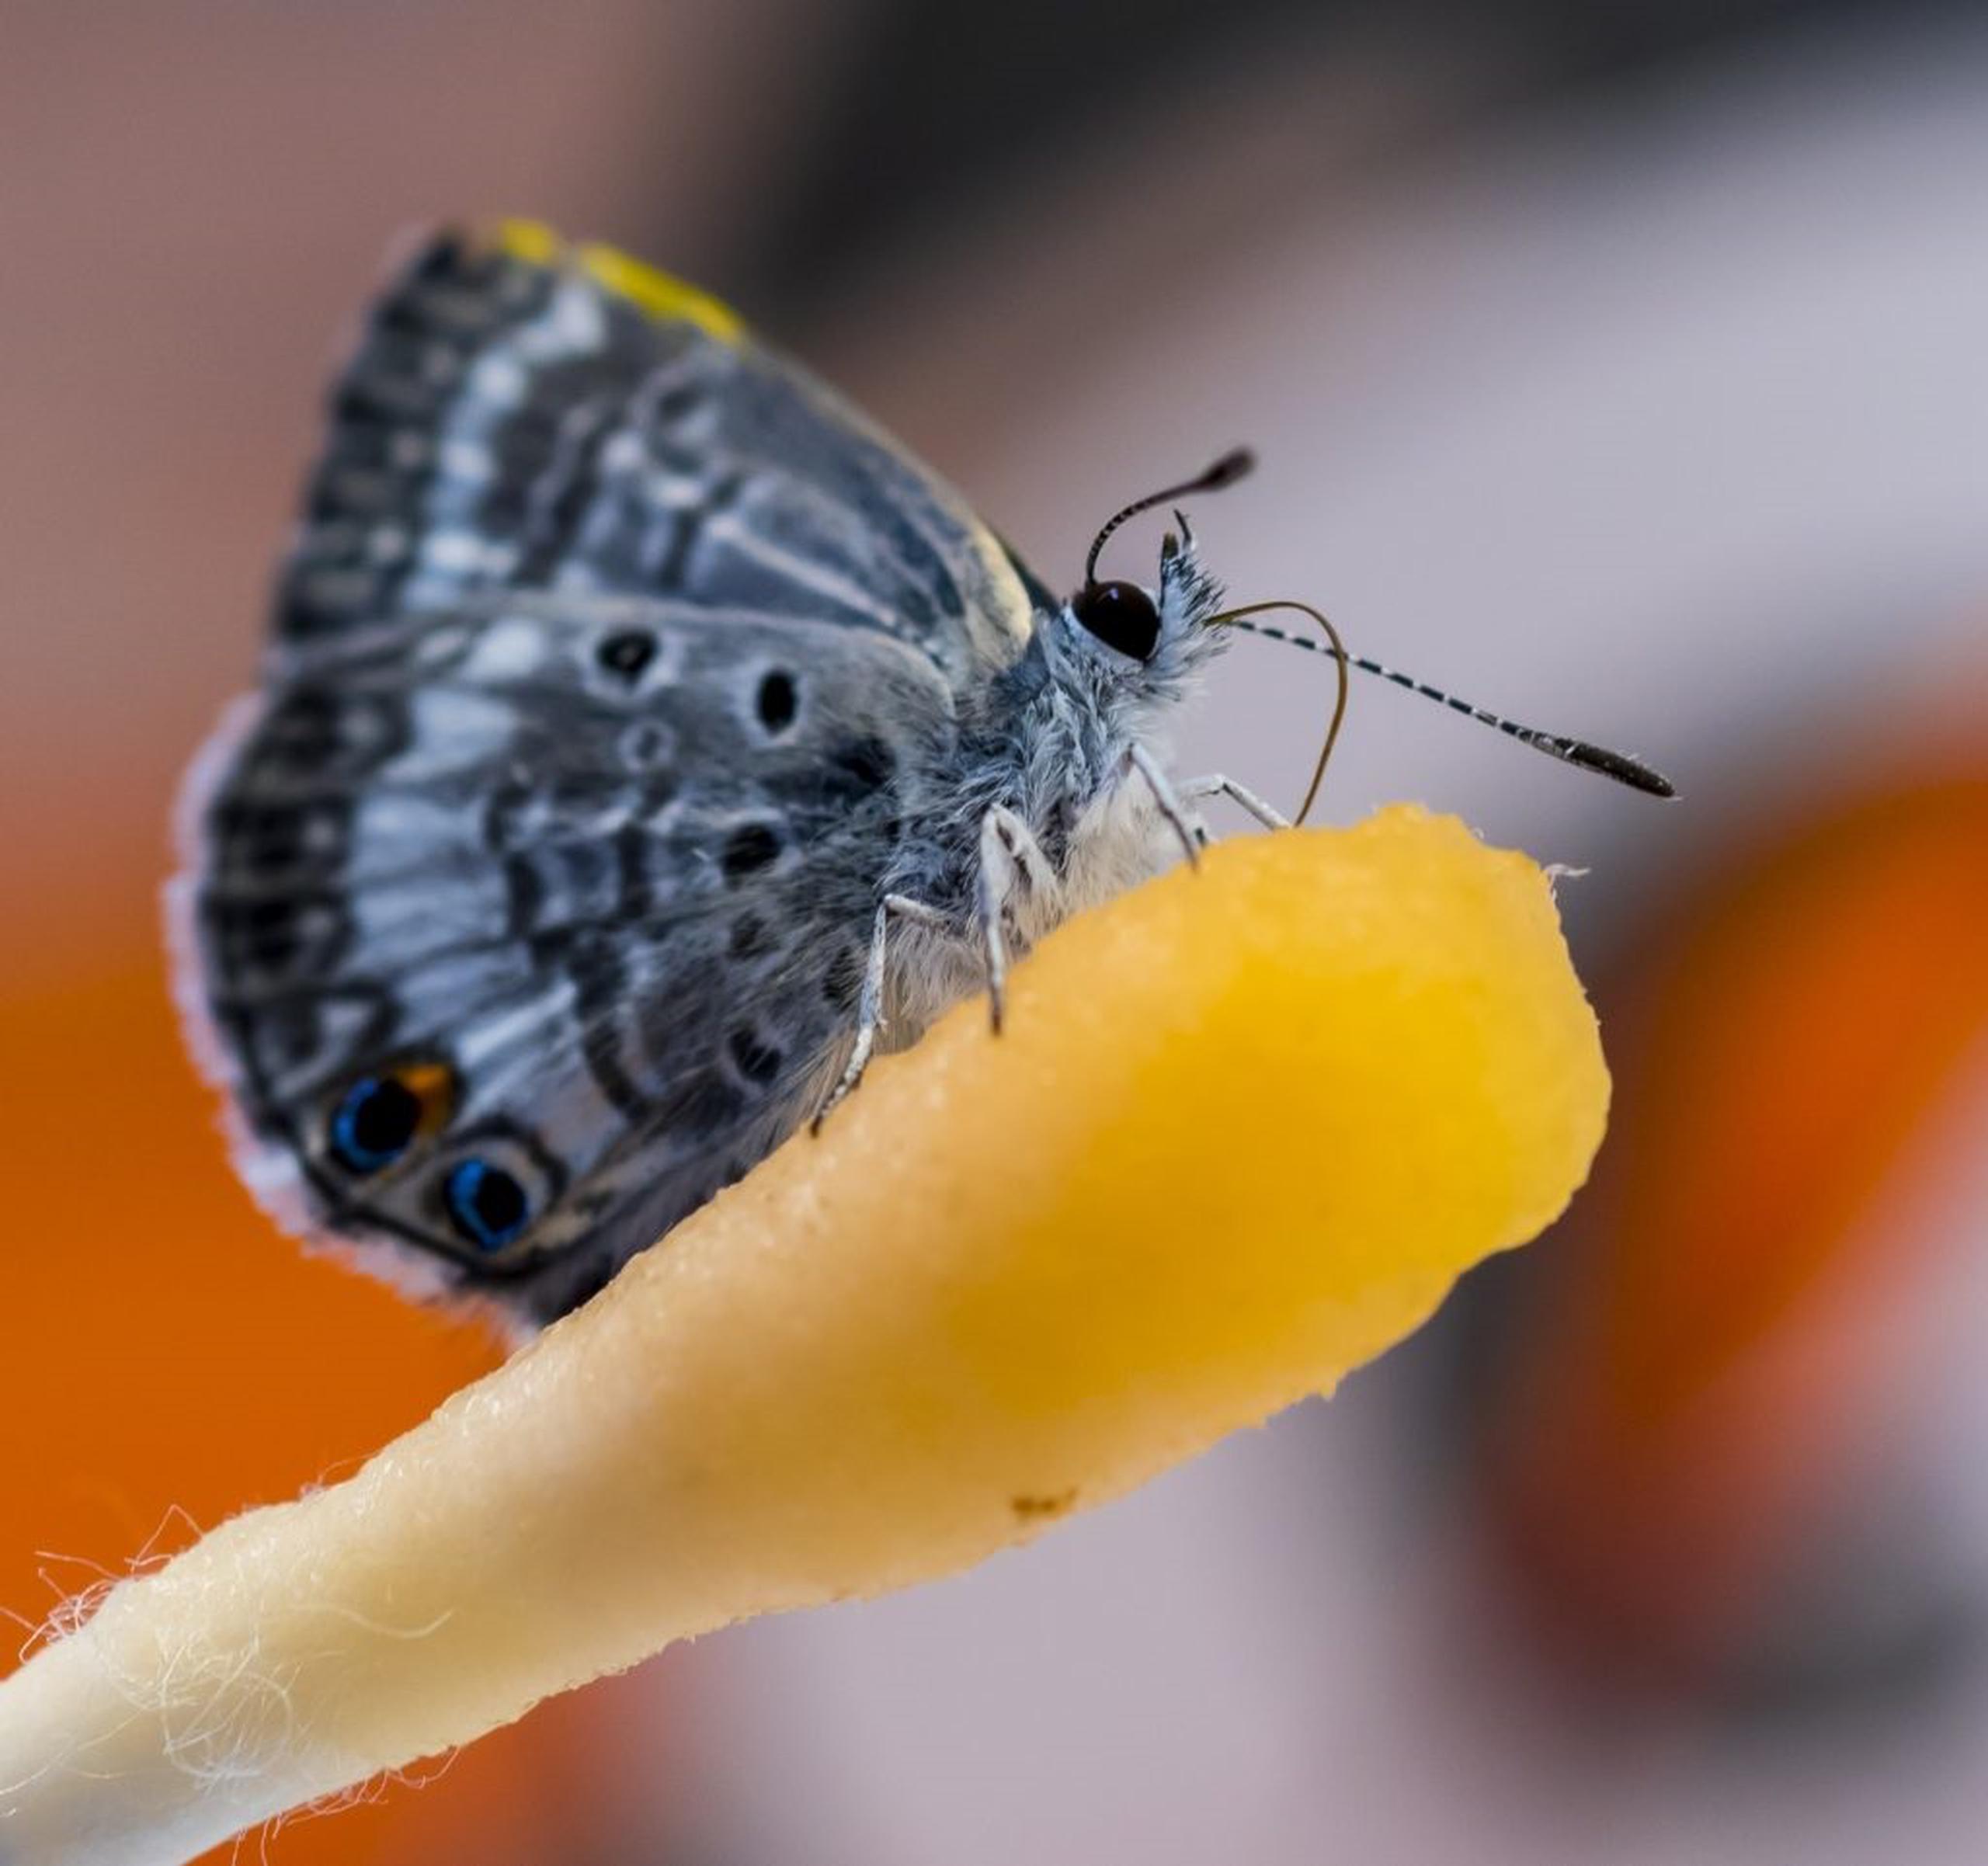 Fotografía cedida por el Museo de Historia Natural de Florida donde se muestra a una mariposa "Miami Blue" posada sobre un hisopo impregnado con la bebida Gatorade.